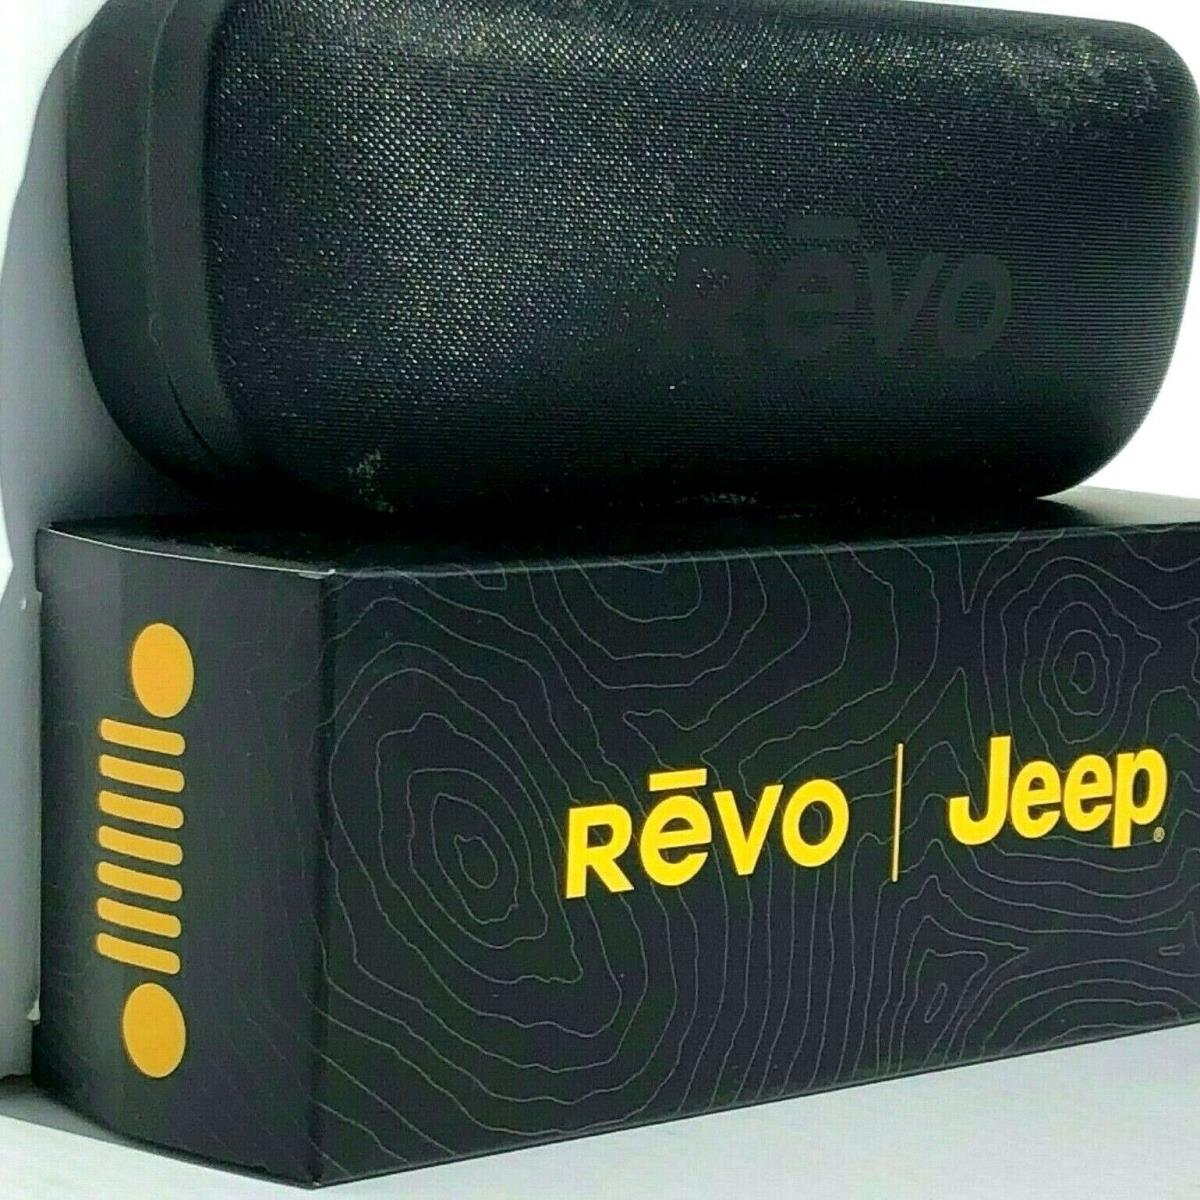 Revo sunglasses JEEP Desert - Blue Frame, Gray Lens